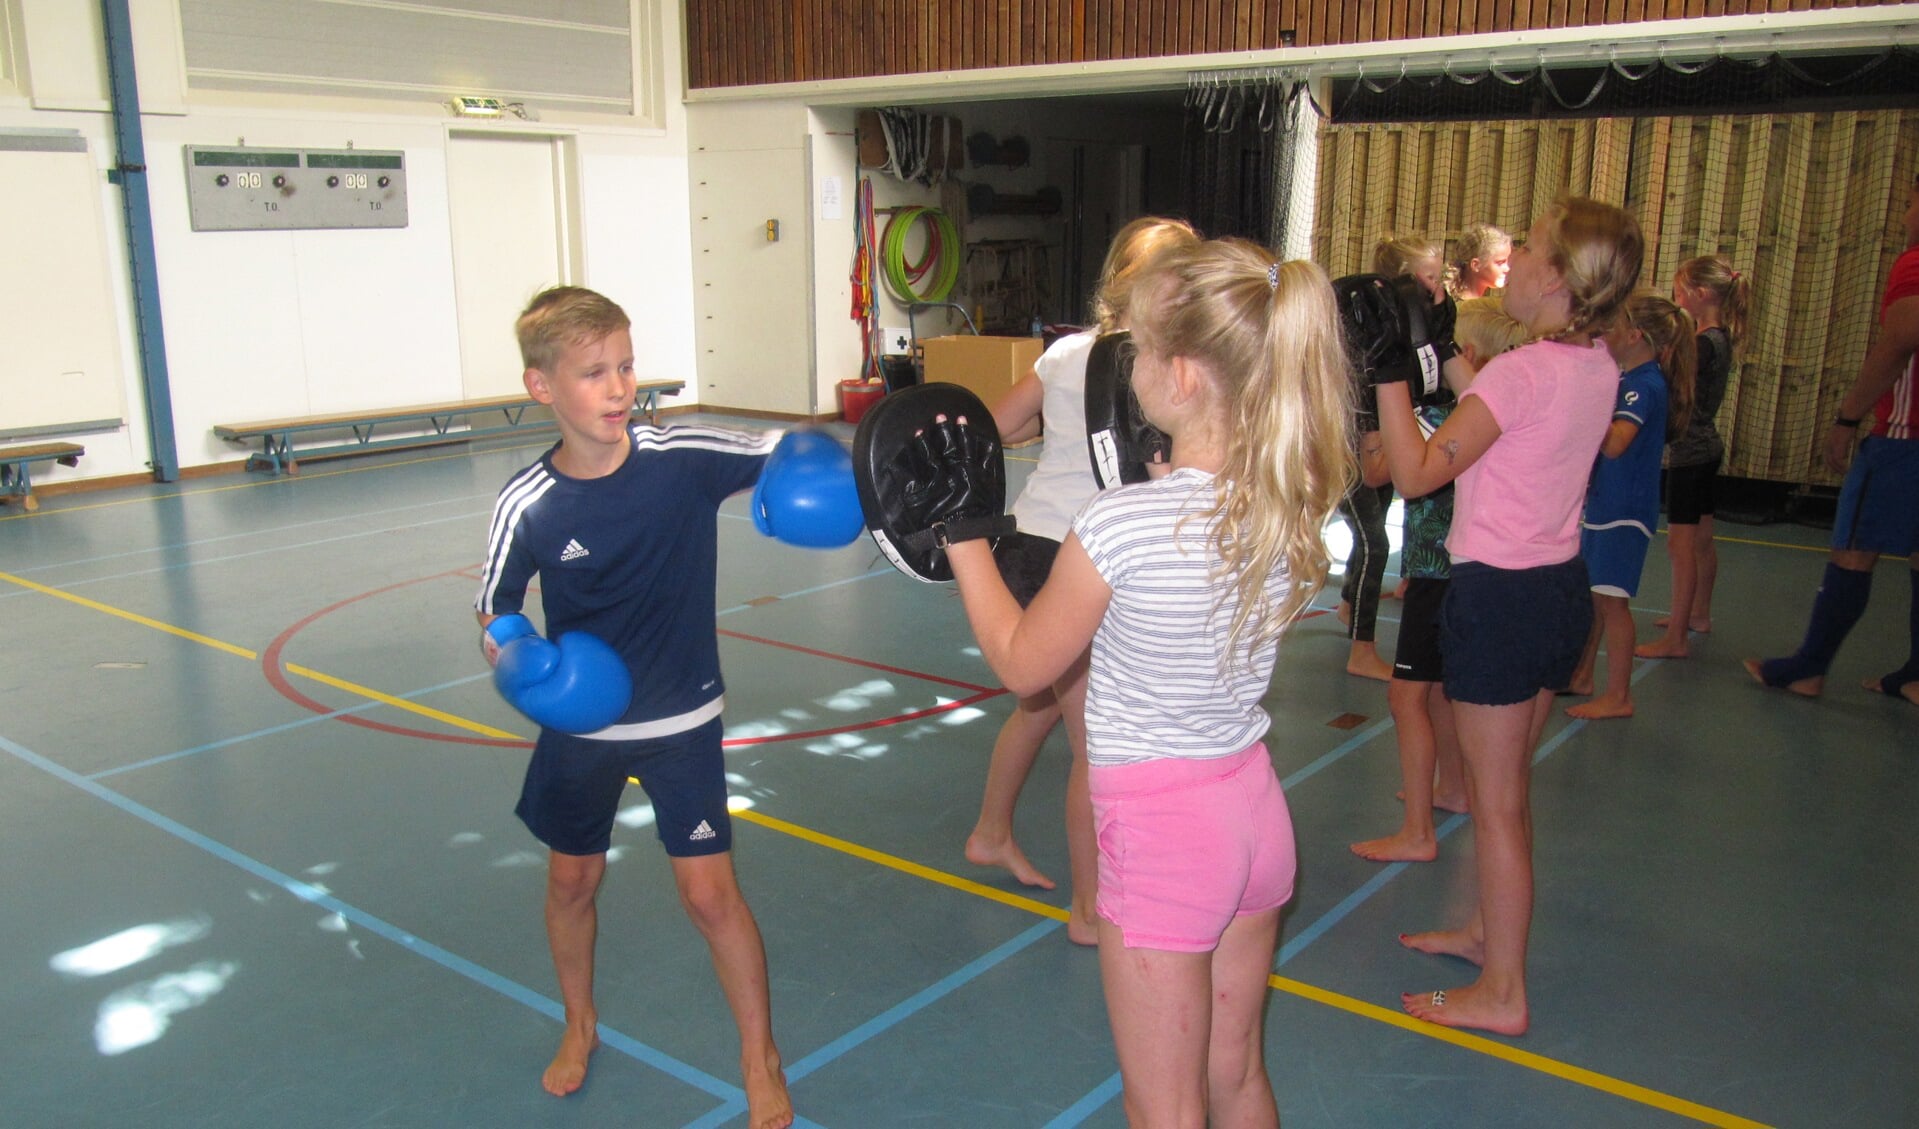 Kickboksen was een van de nieuwe sporten tijdens de Ruurlose sportdag die er beoefend konden worden. Foto: PR